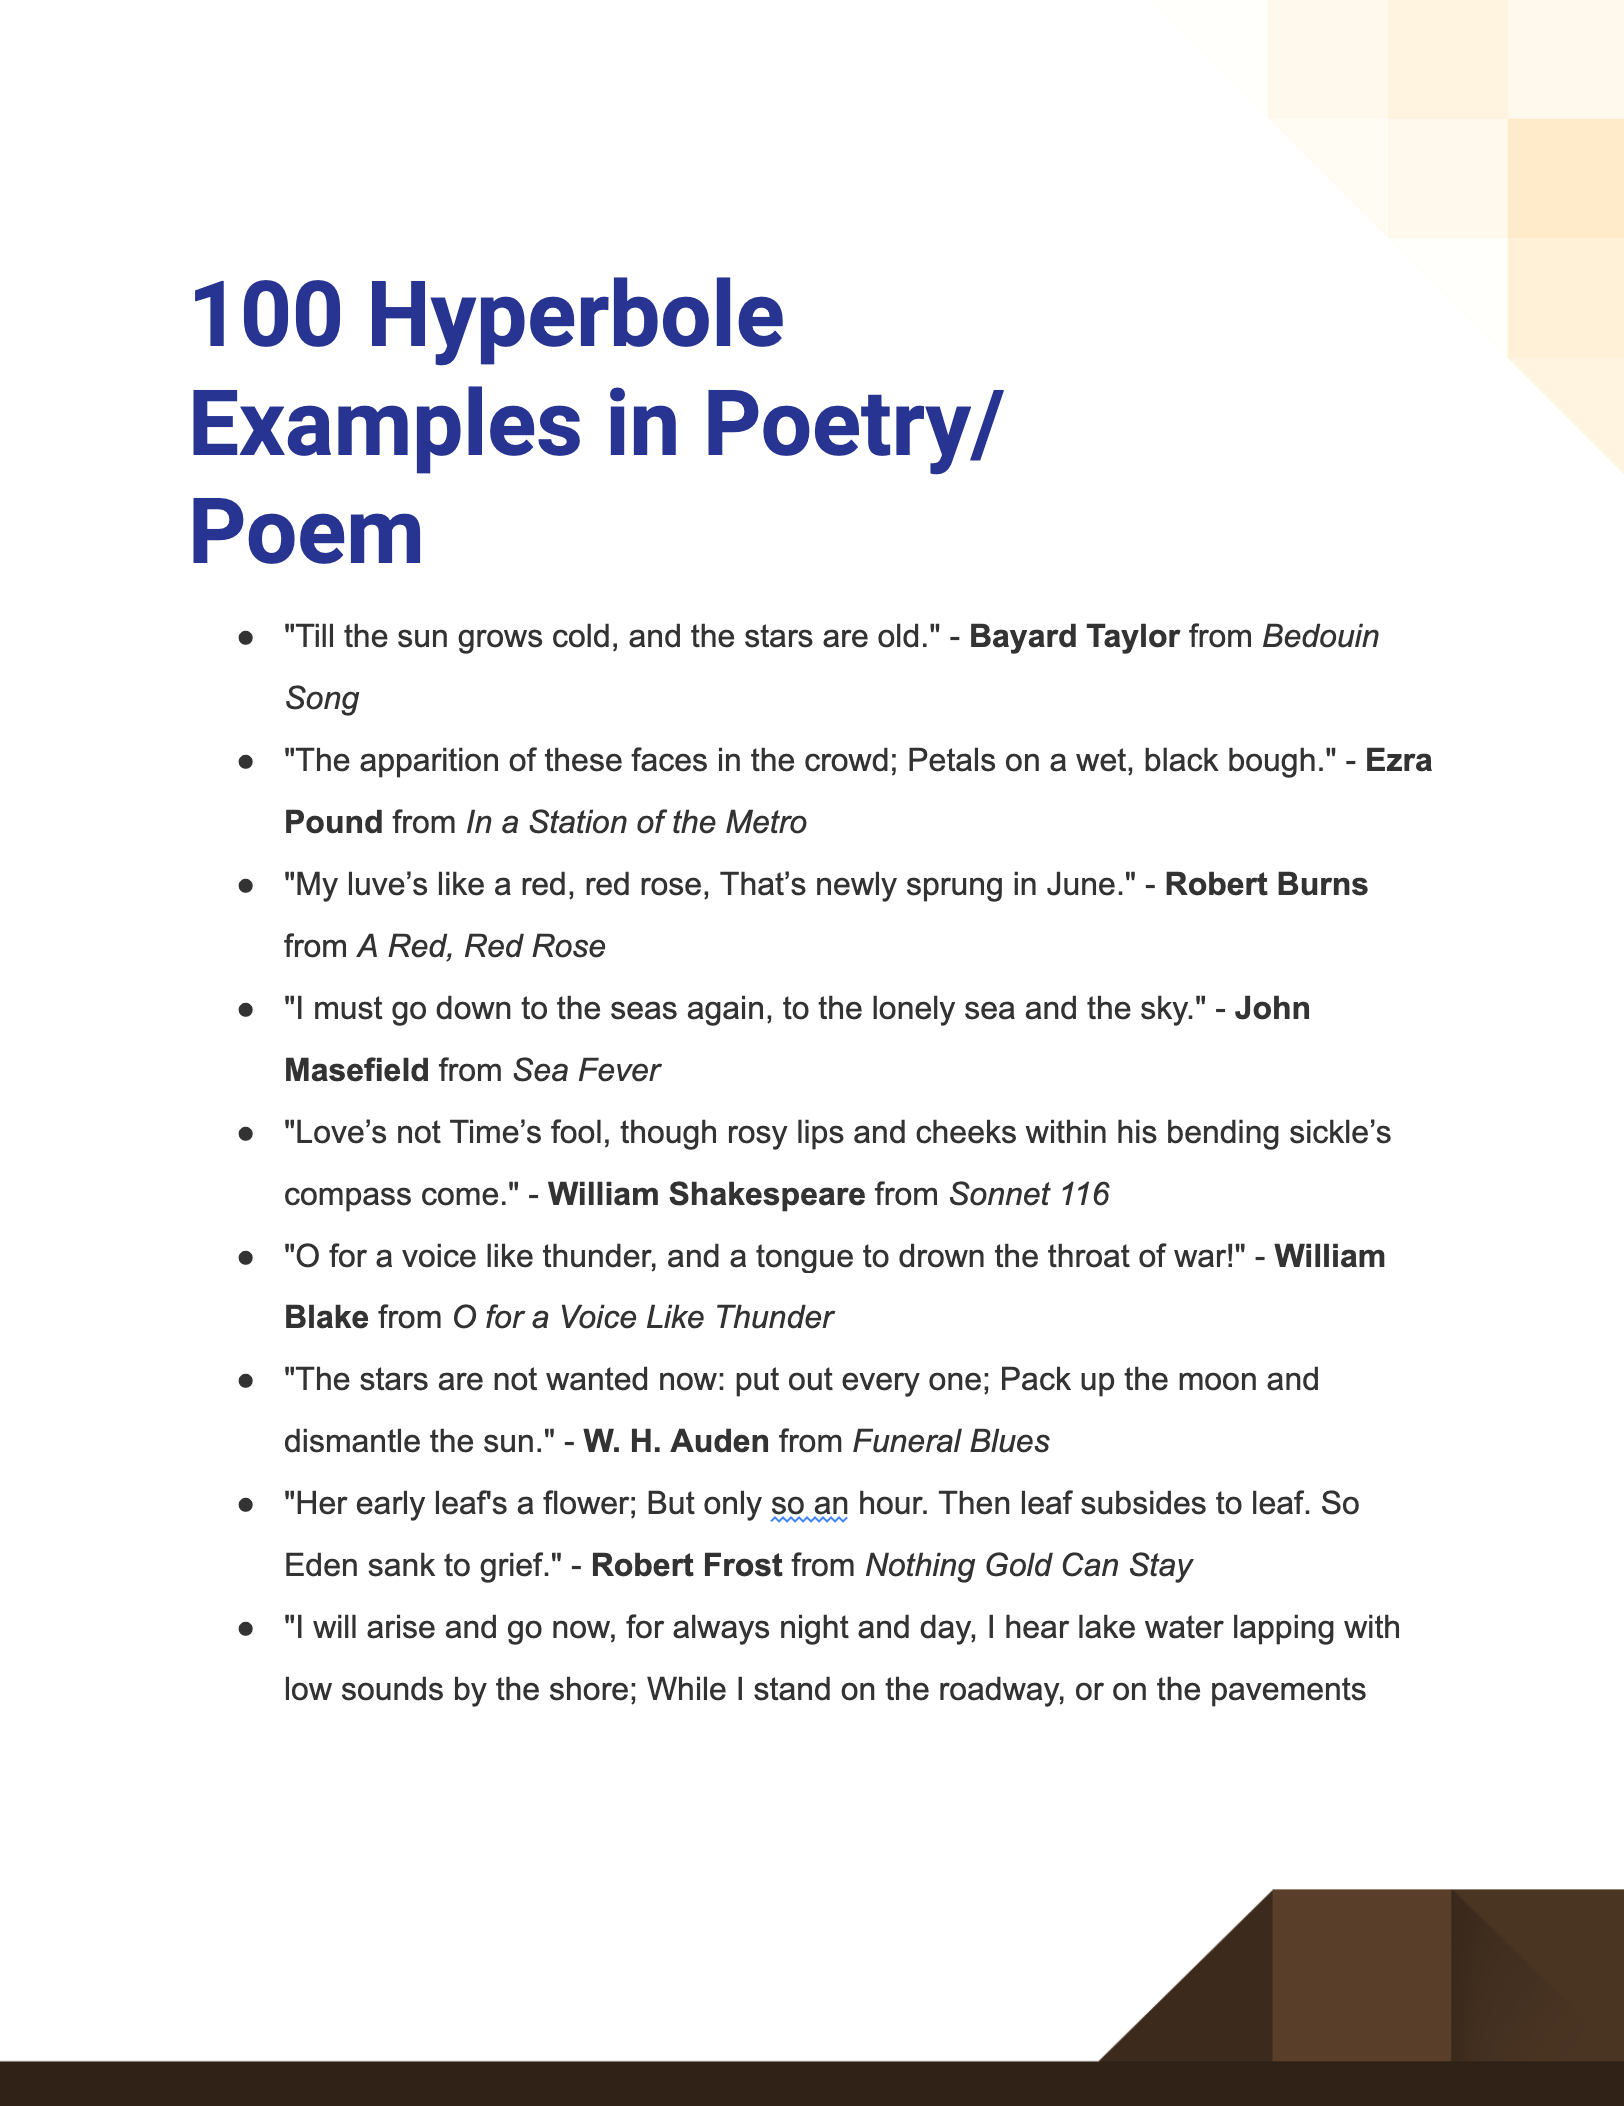 hyperbole examples in poetry poem